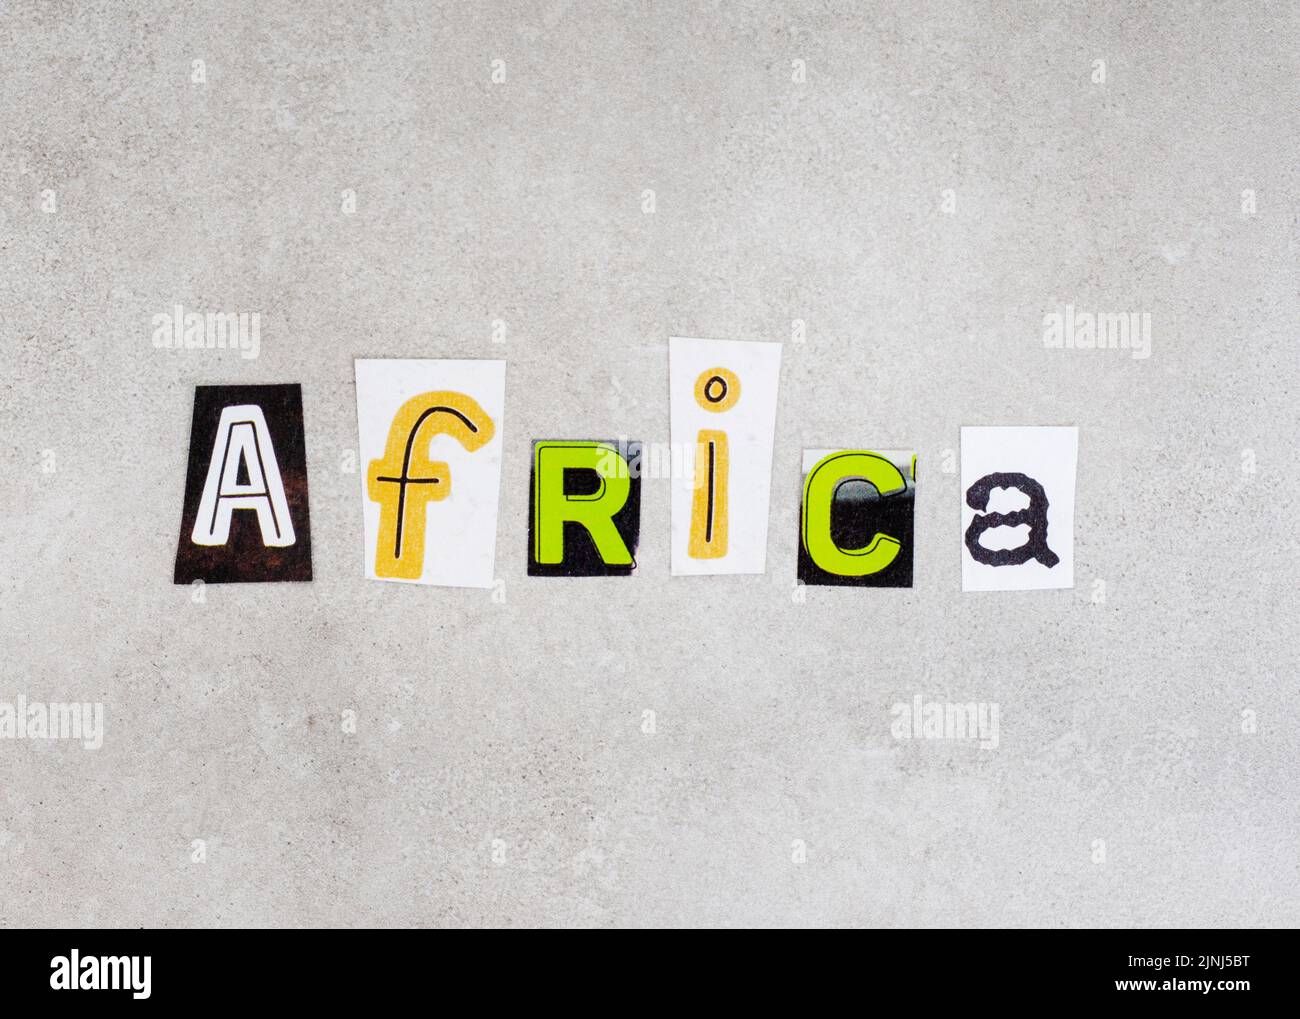 Afrique, écrit avec des lettres de coupures de magazine sur du gris tacheté Banque D'Images